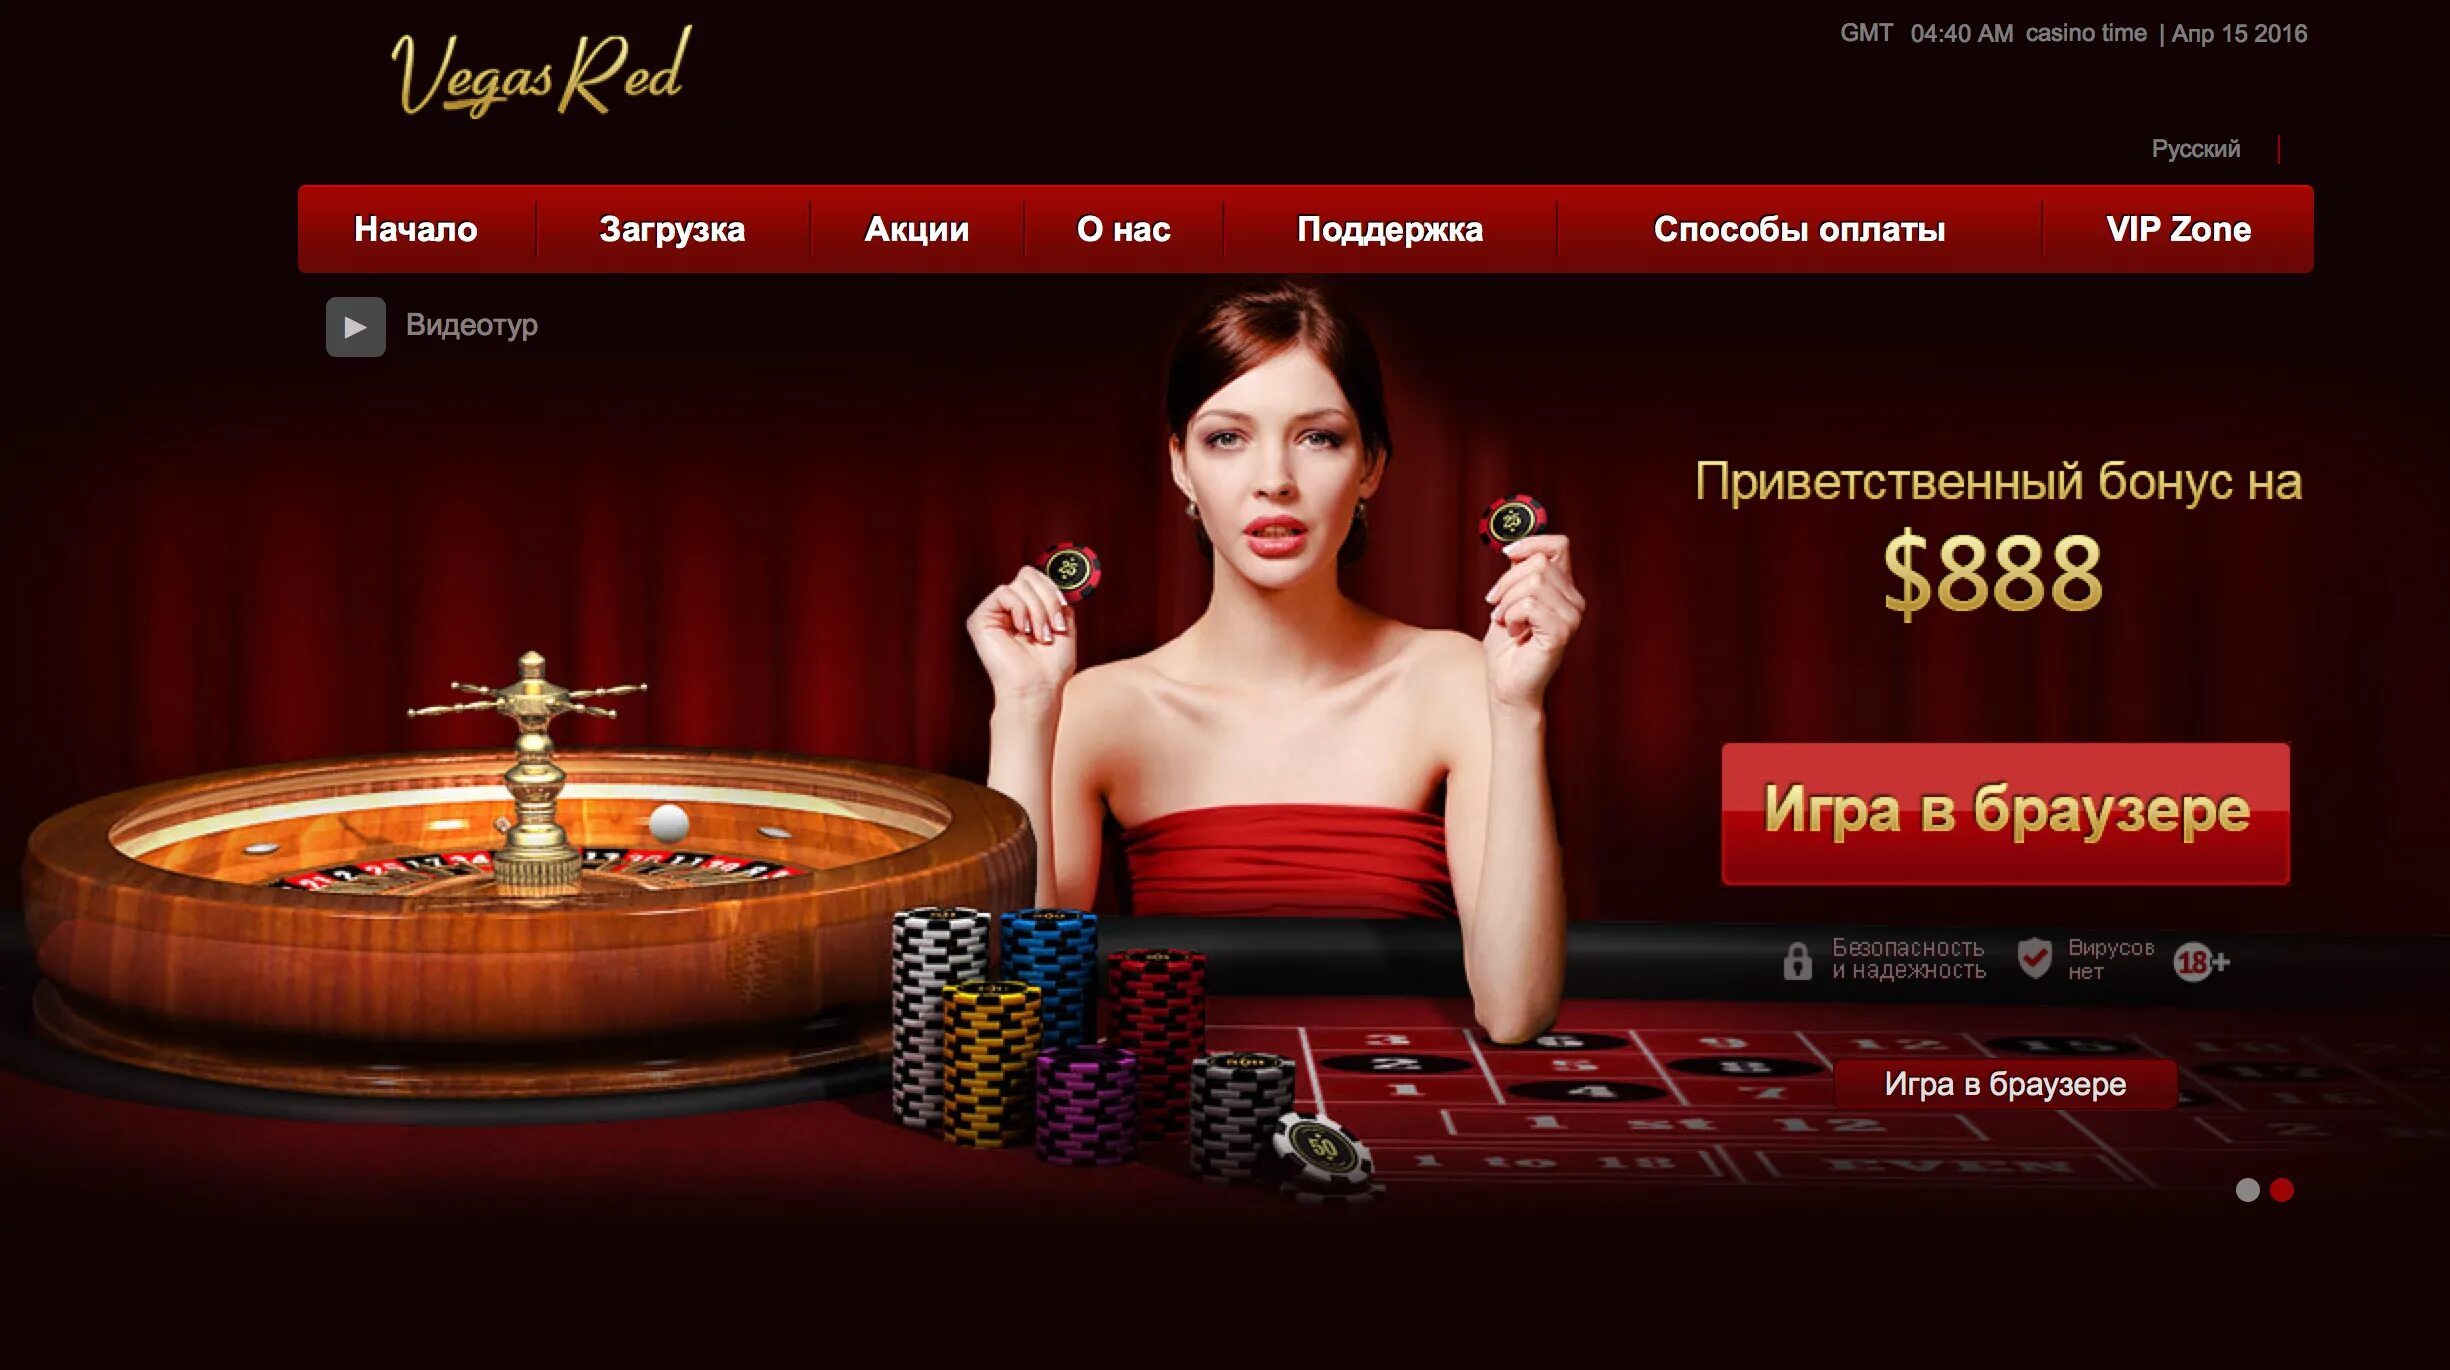 Casino сайты. Дизайн интернет казино. Казино бездепозитный бонус при регистрации. Казино дизайн сайта. Рекламный баннера казино.